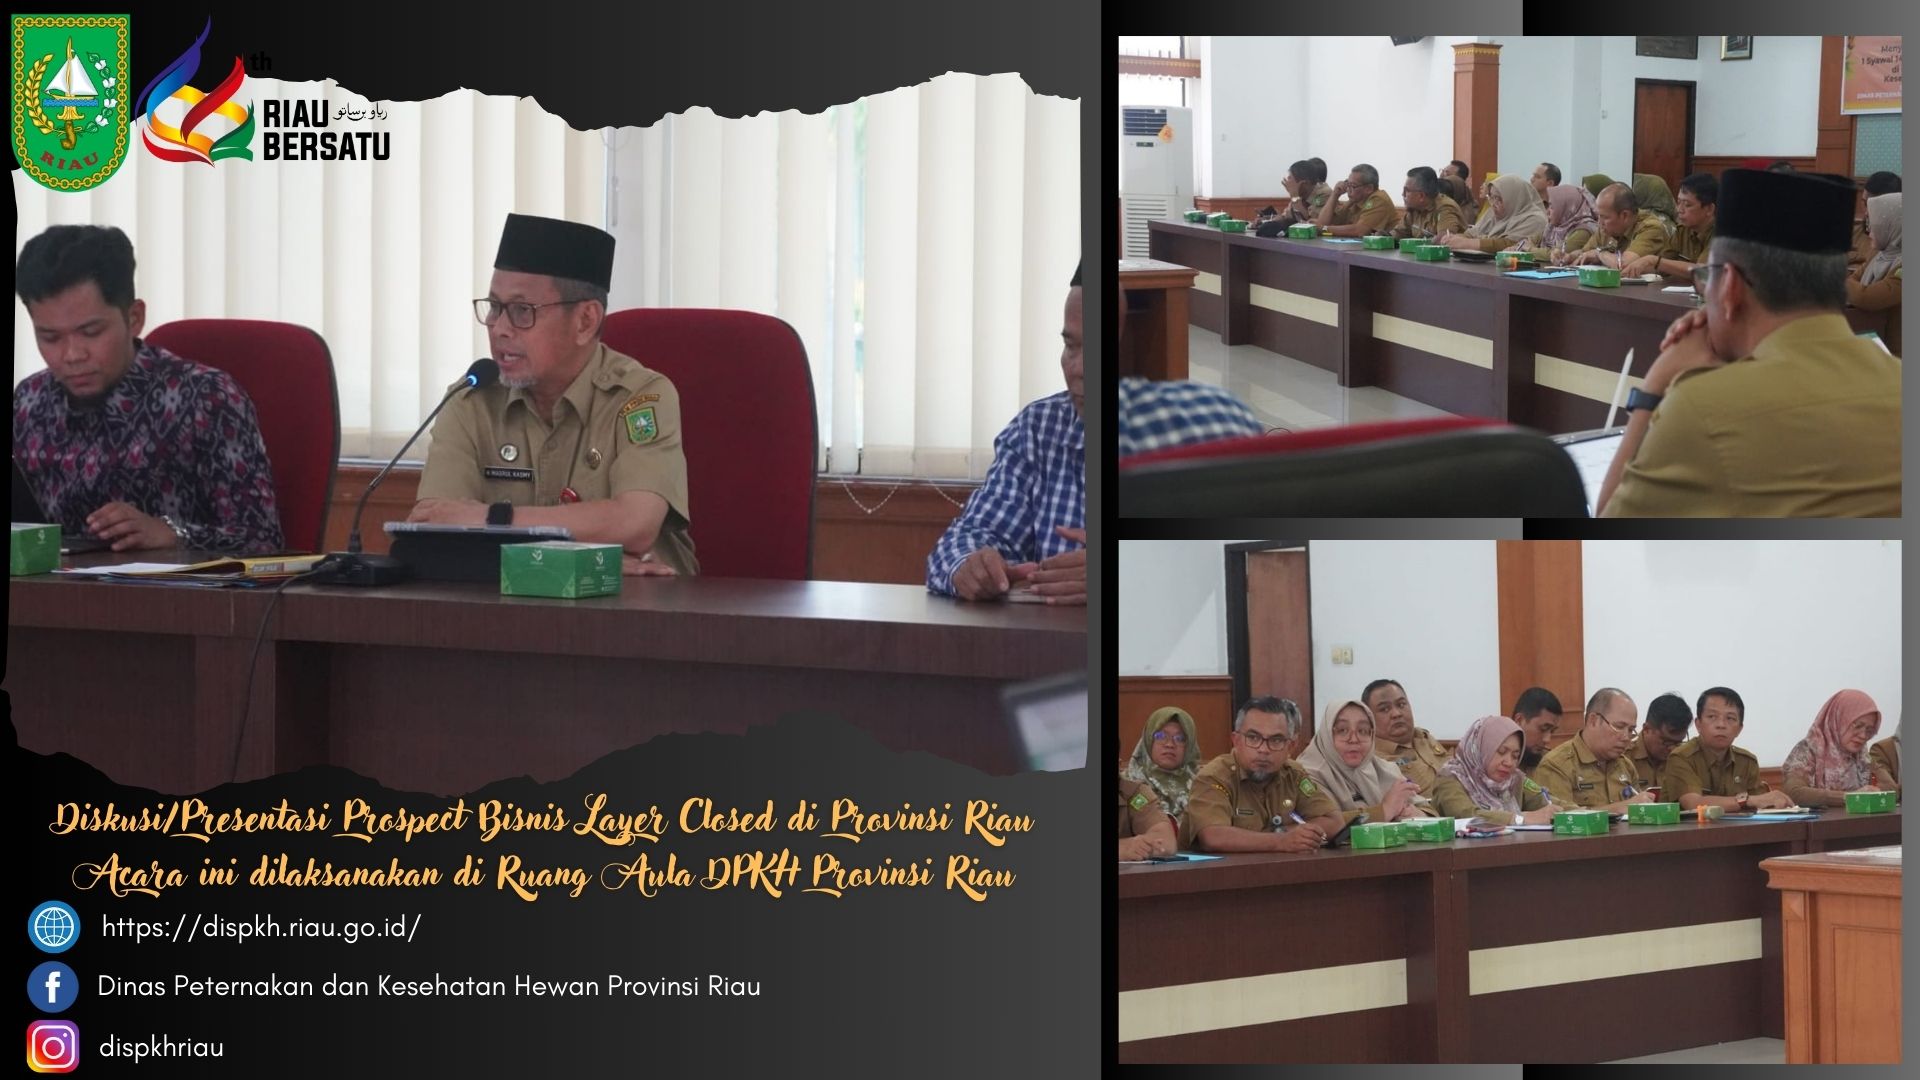 Diskusi/Presentasi Prospect Bisnis Layer Closed di Provinsi Riau  Acara ini dilaksanakan di Ruang Aula DPKH Provinsi Riau